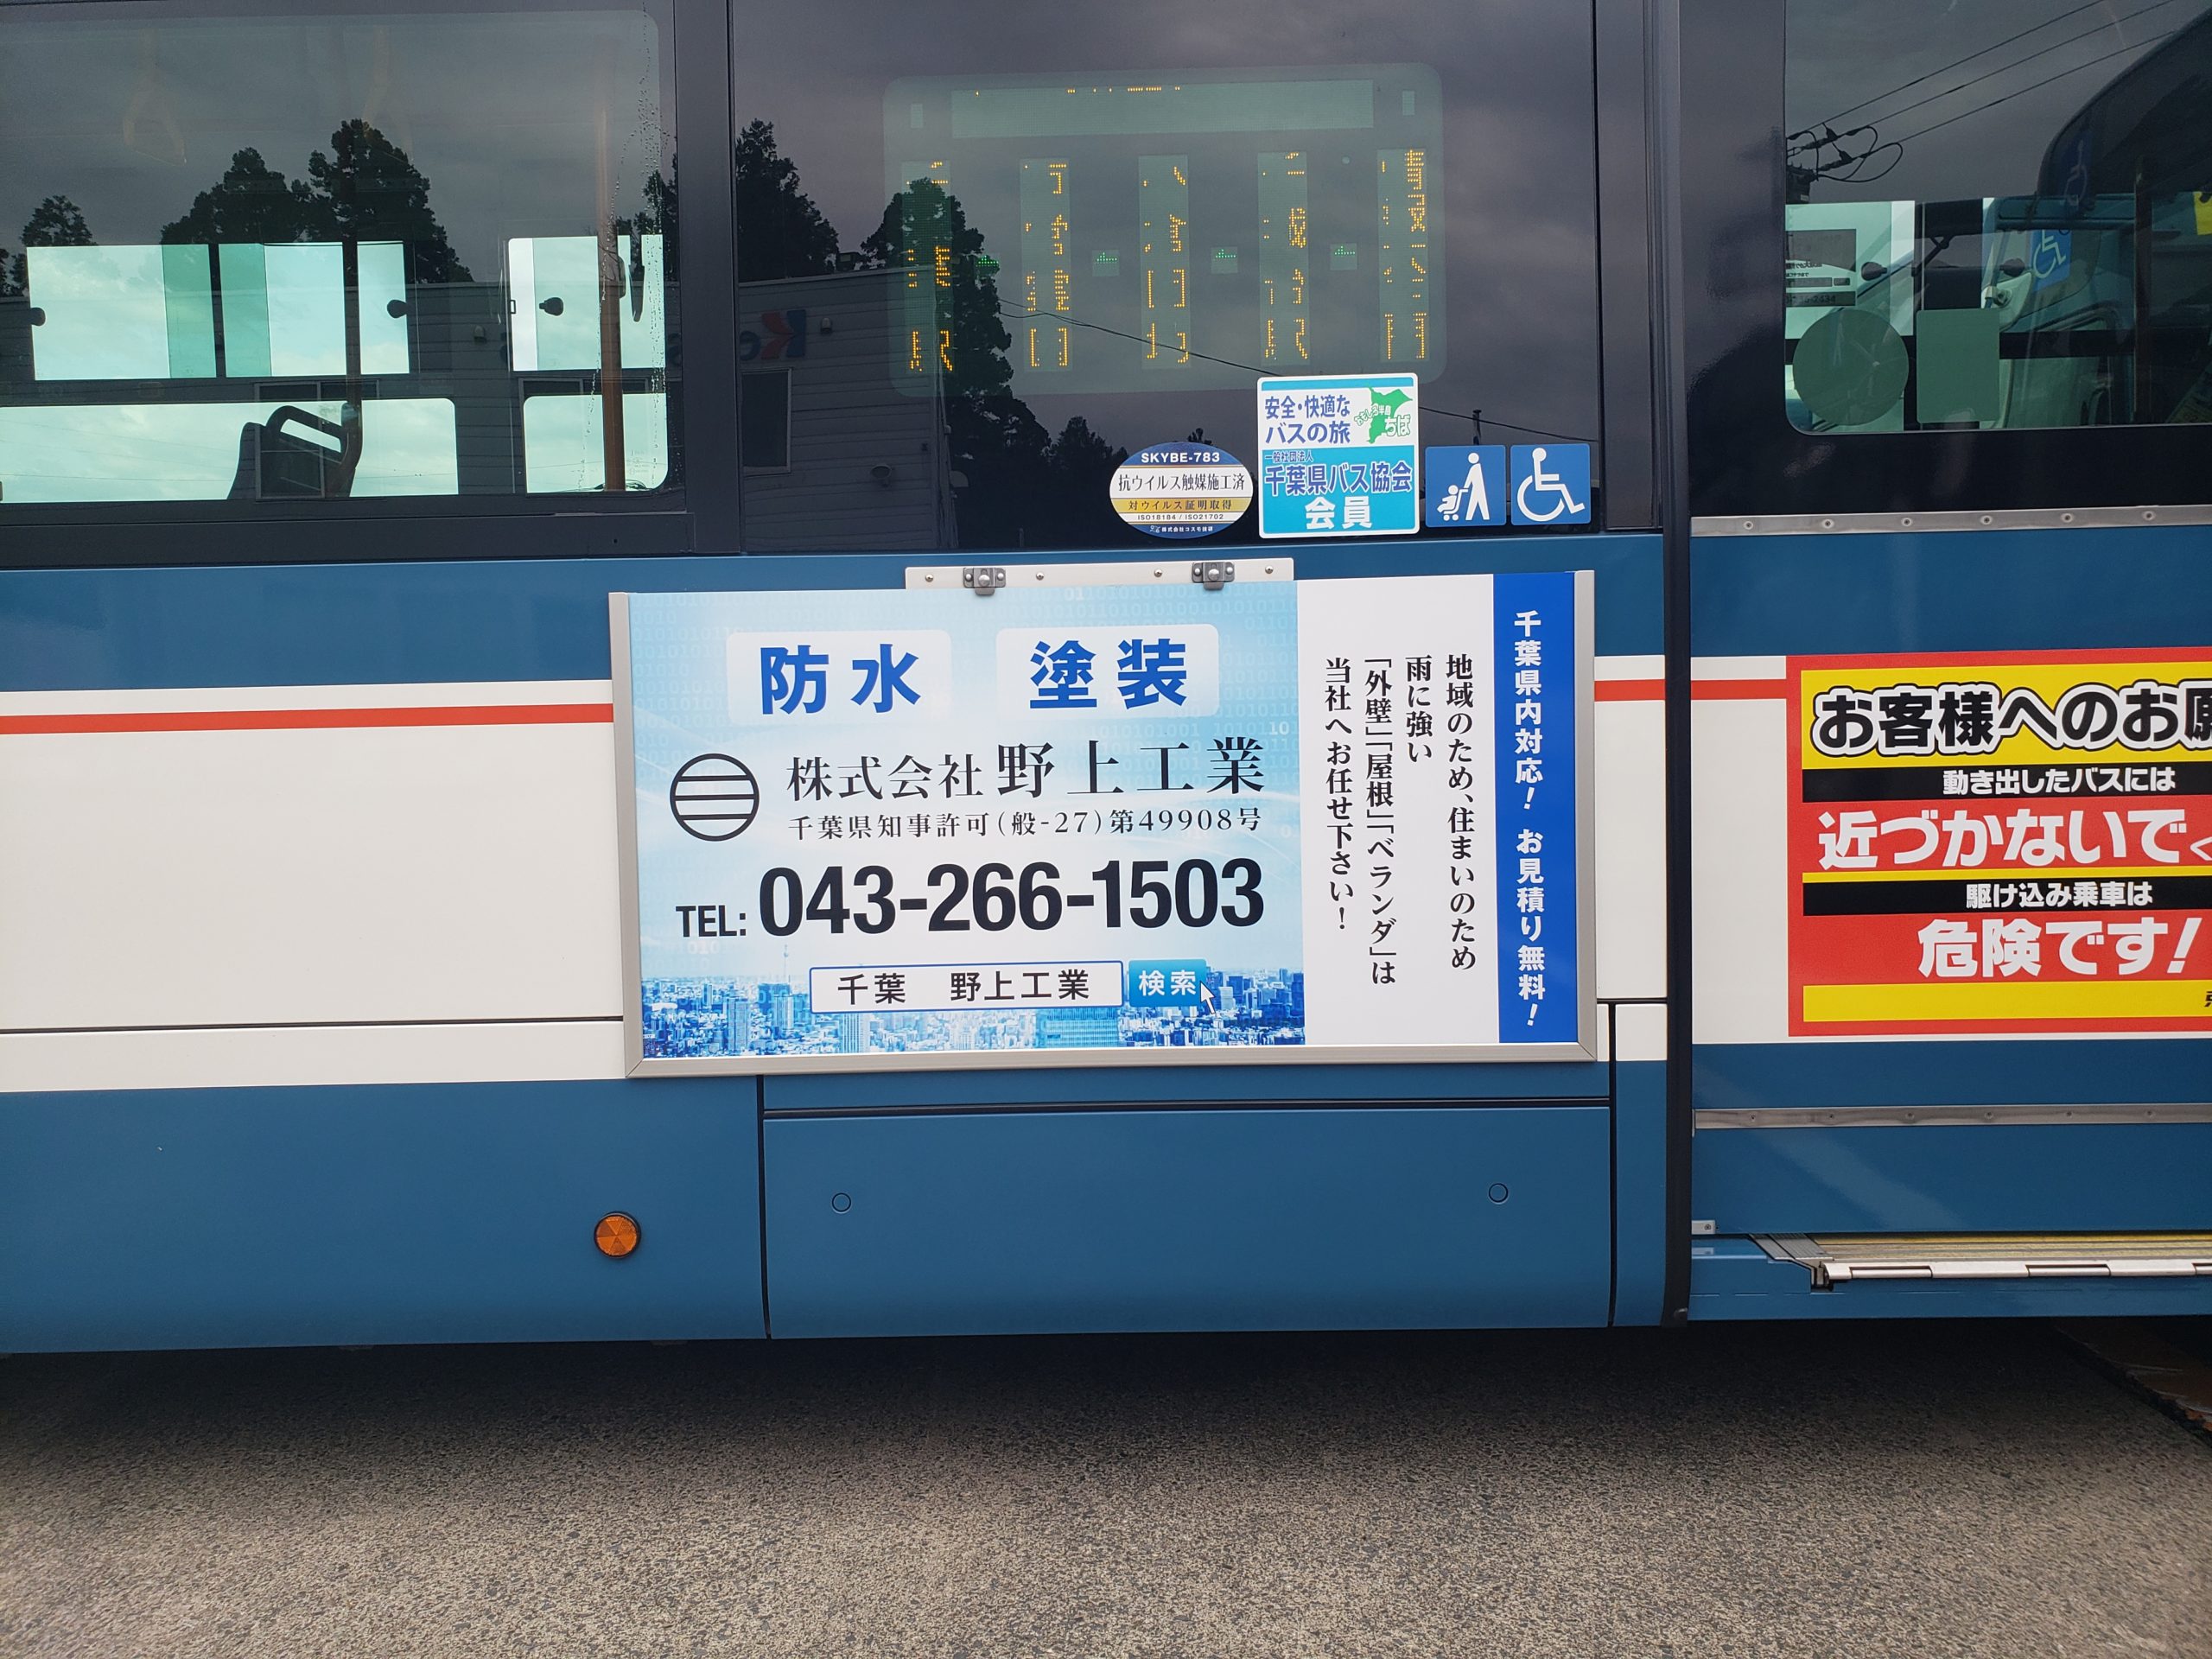 京成バスに弊社広告が掲出されております！